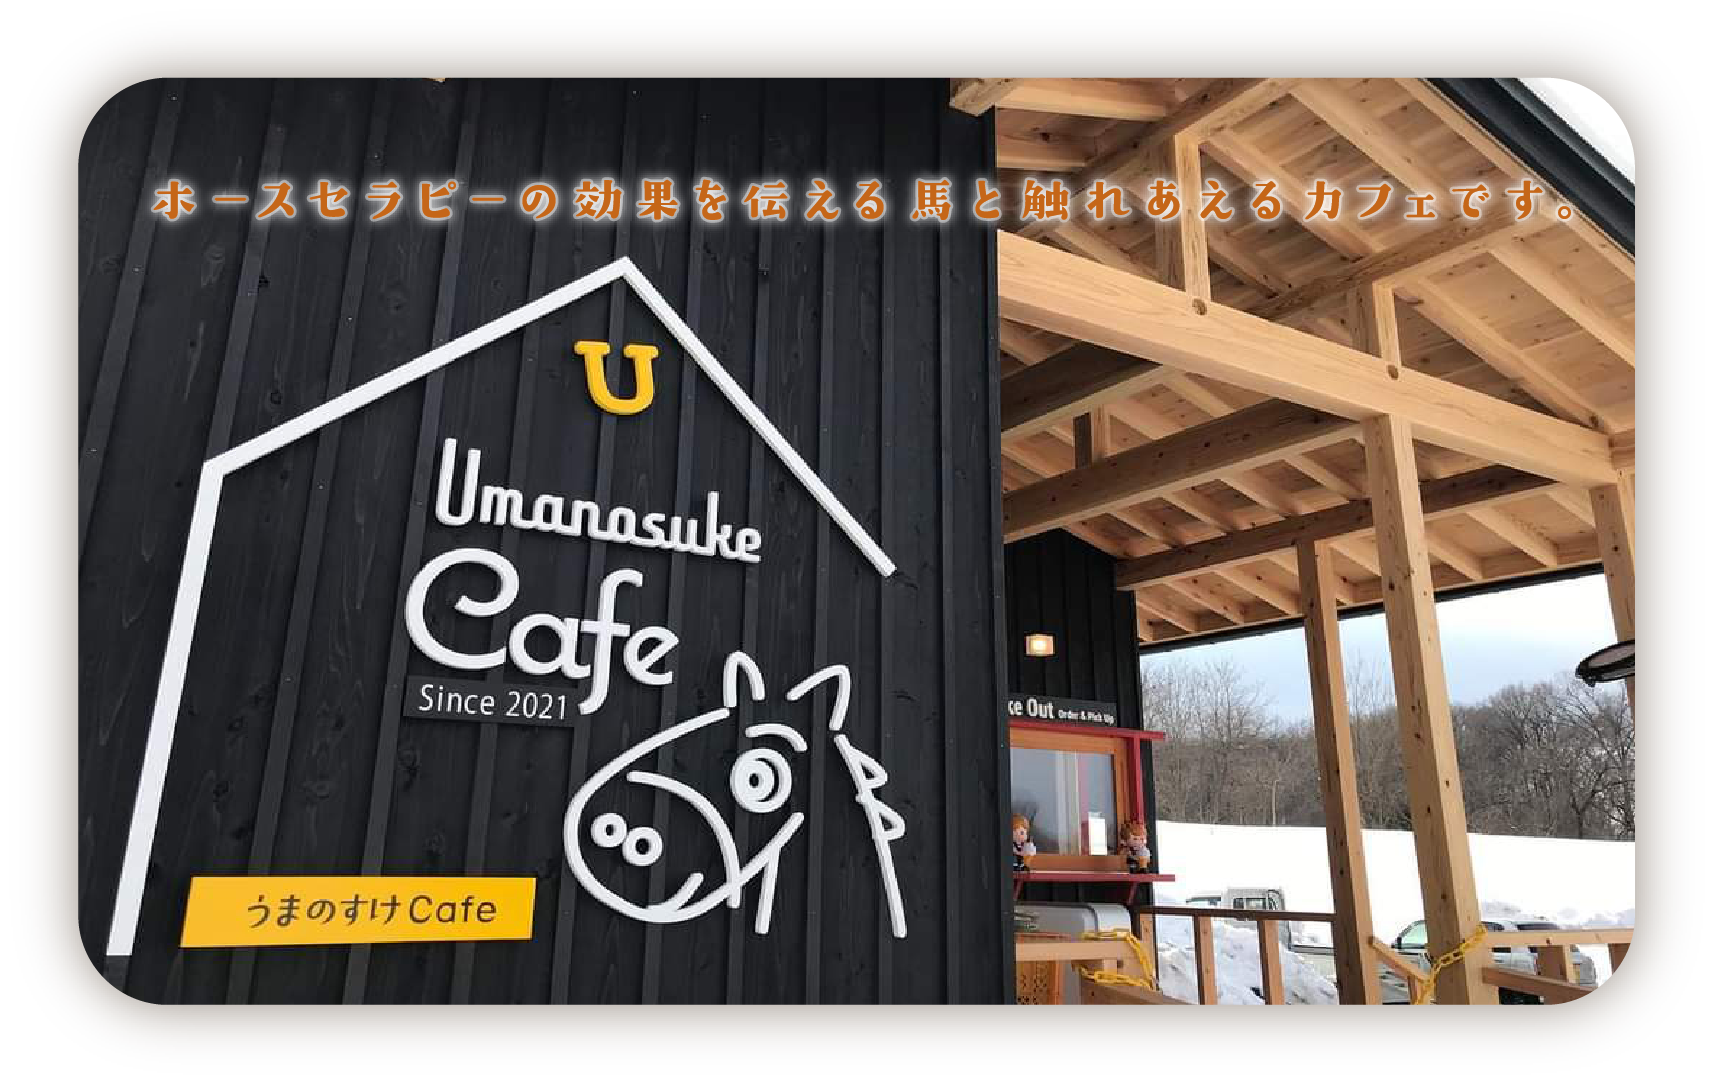 Cafe OPEN カフェスペースオープン2022年2月11日｜ホースセラピーの効果を伝える馬カフェがこの冬、オープン！